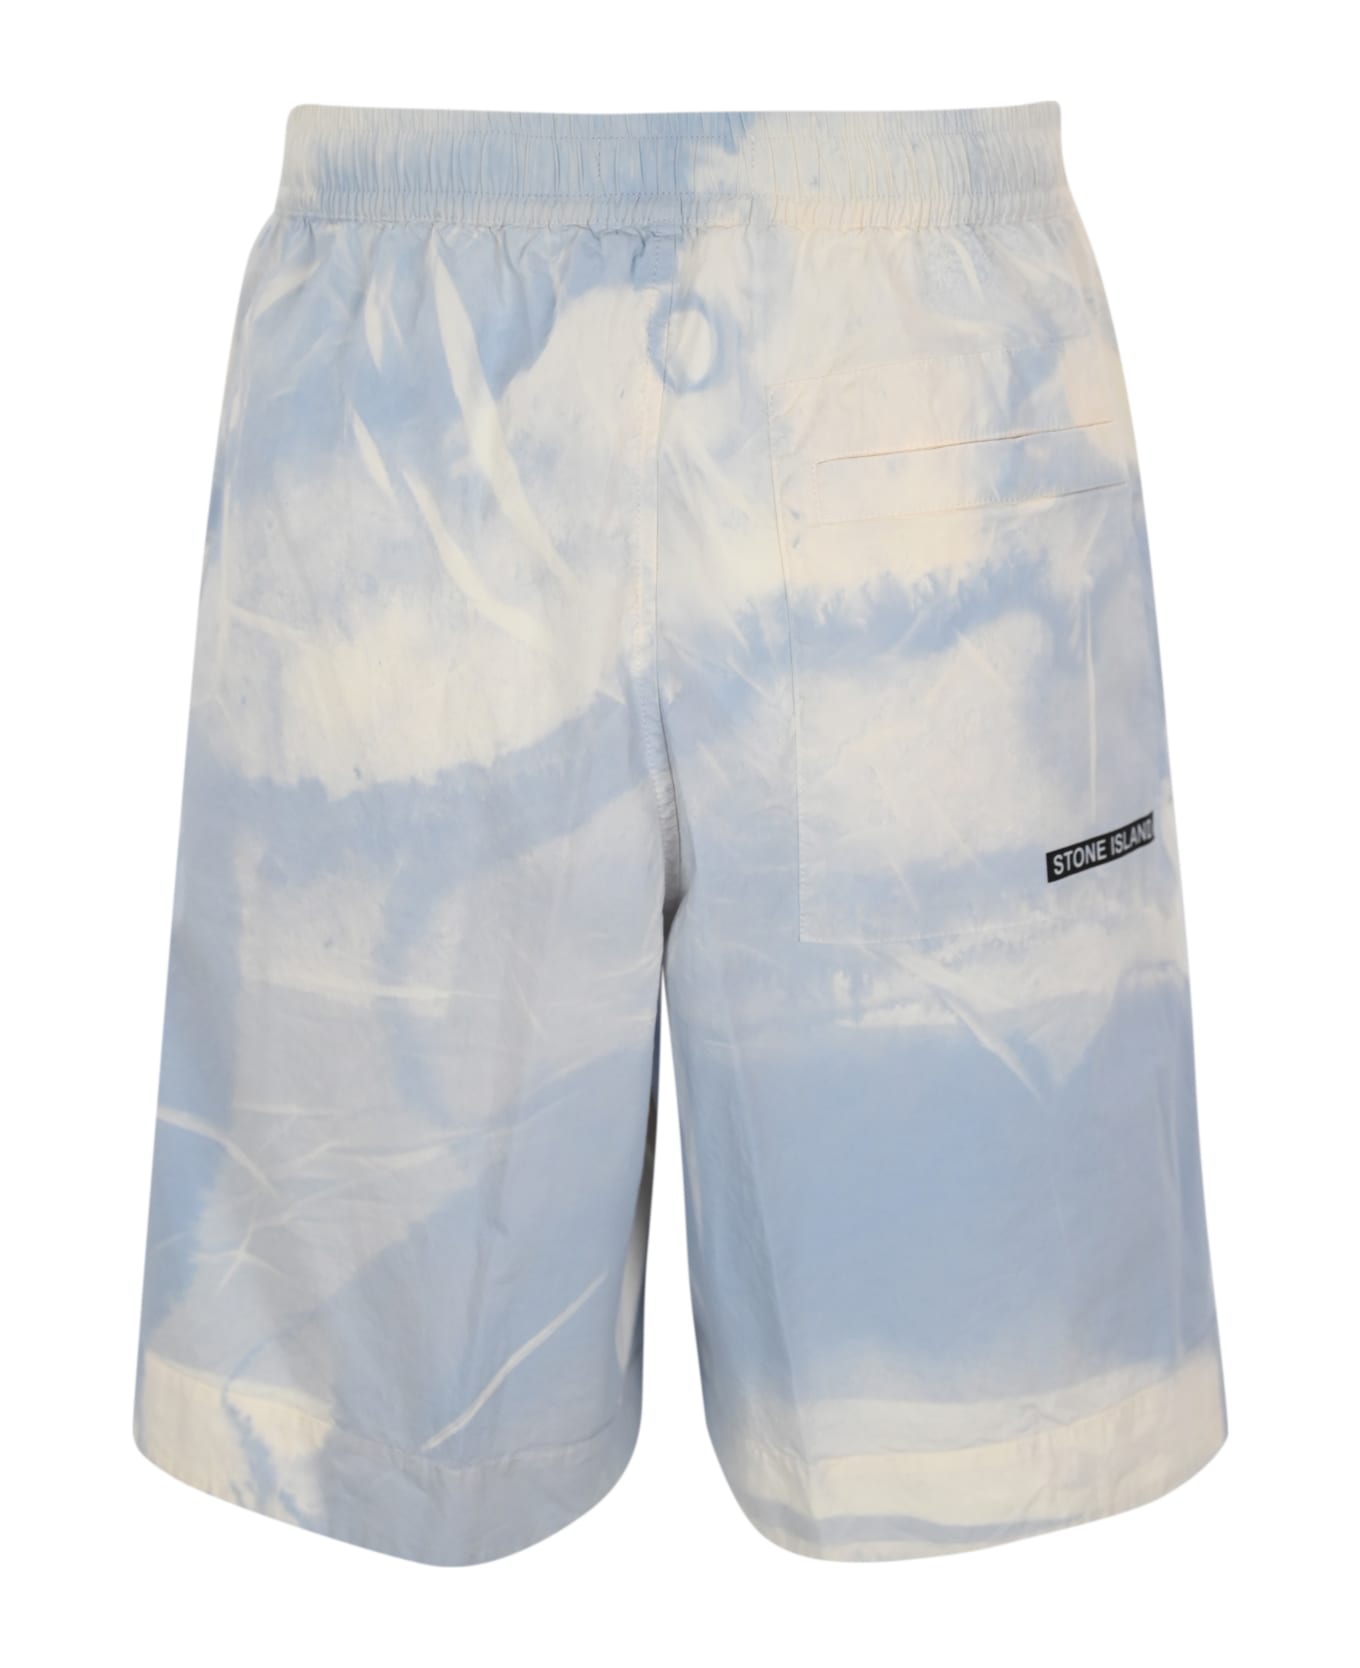 Stone Island Bermuda Shorts In Stretch Cotton L0695 - Blue